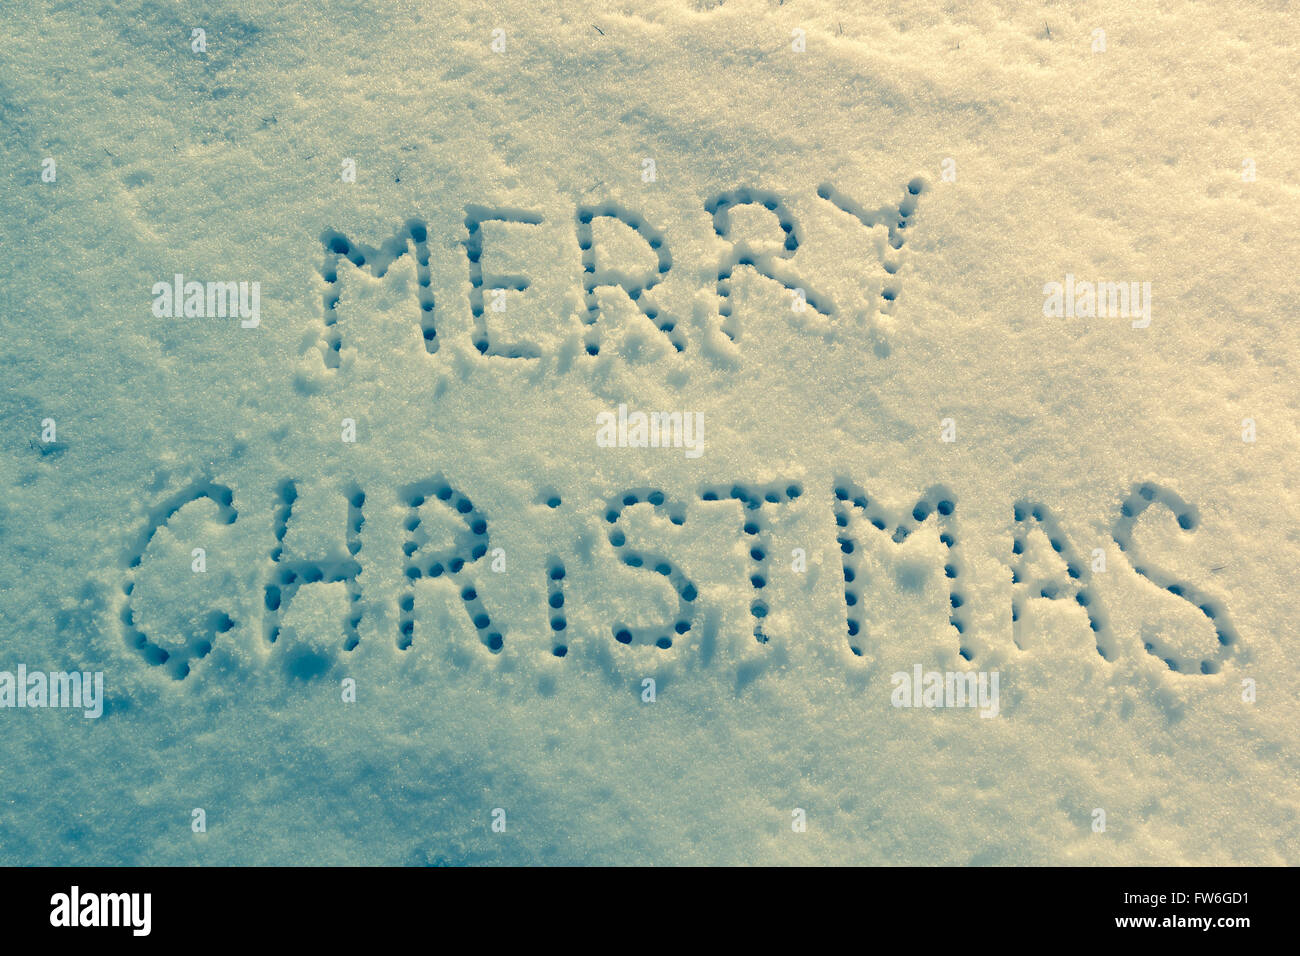 Las palabras escritas, Feliz Navidad en un campo nevado, año nuevo concepto. Foto de stock